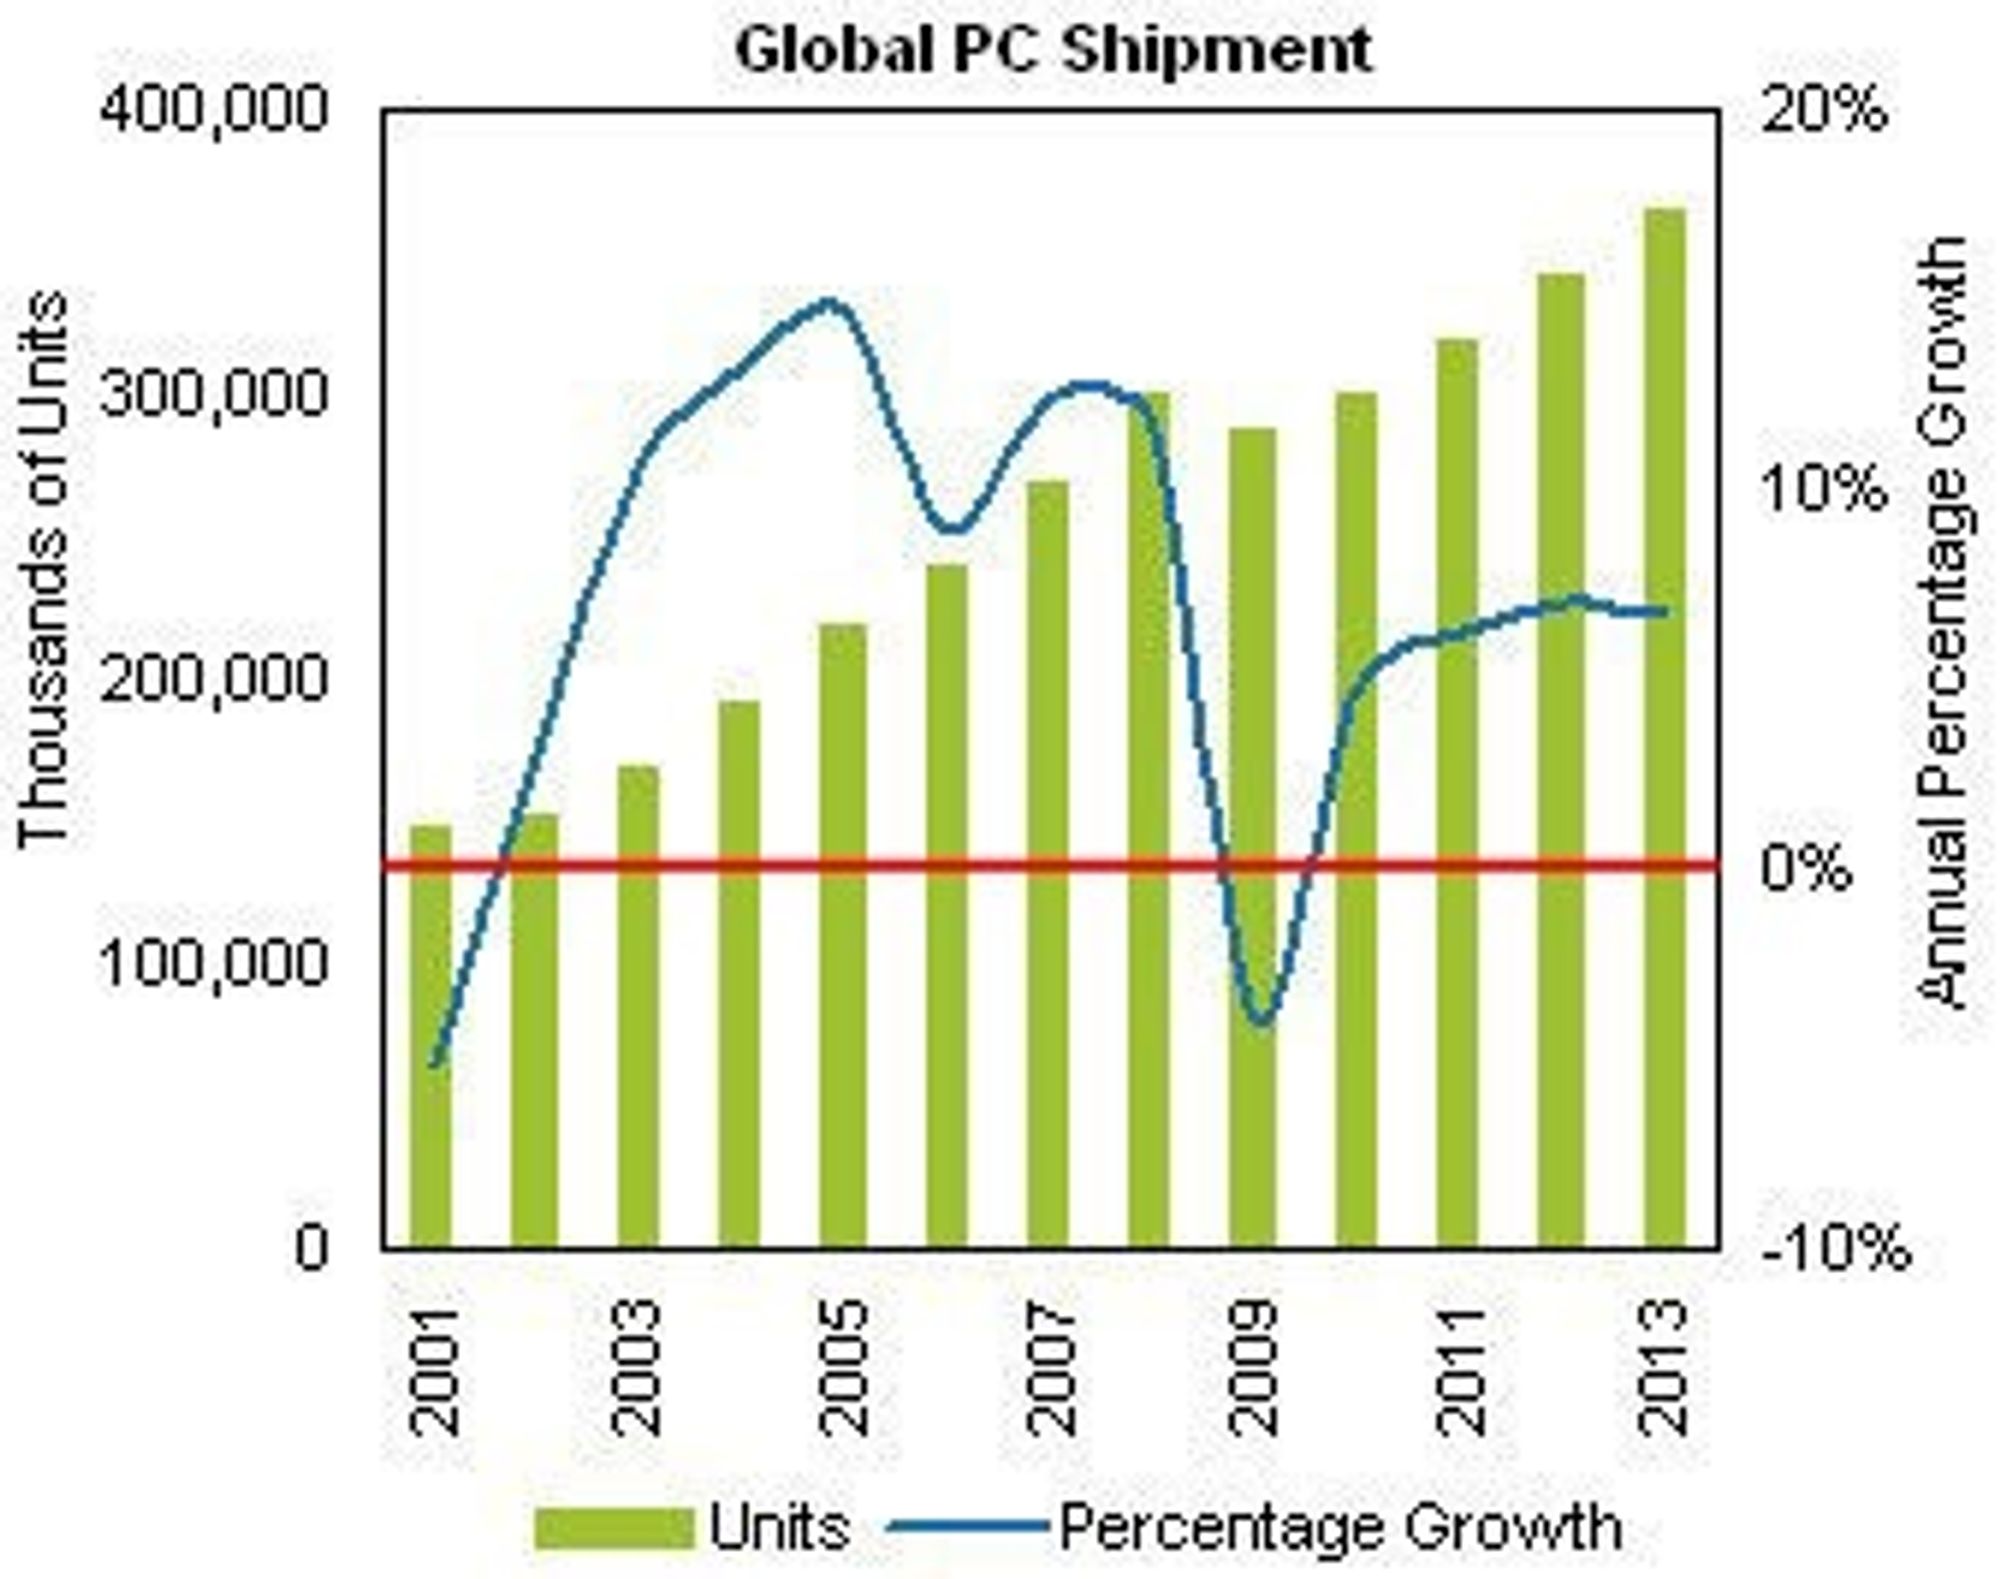 Det prosentvise fallet i pc-leveranser var større fra 2000 til 2001 enn den blir fra 2008 til 2009, tror iSuppli, som tirsdag publiserte denne prognosen for det globale pc-markedet fram til 2013.